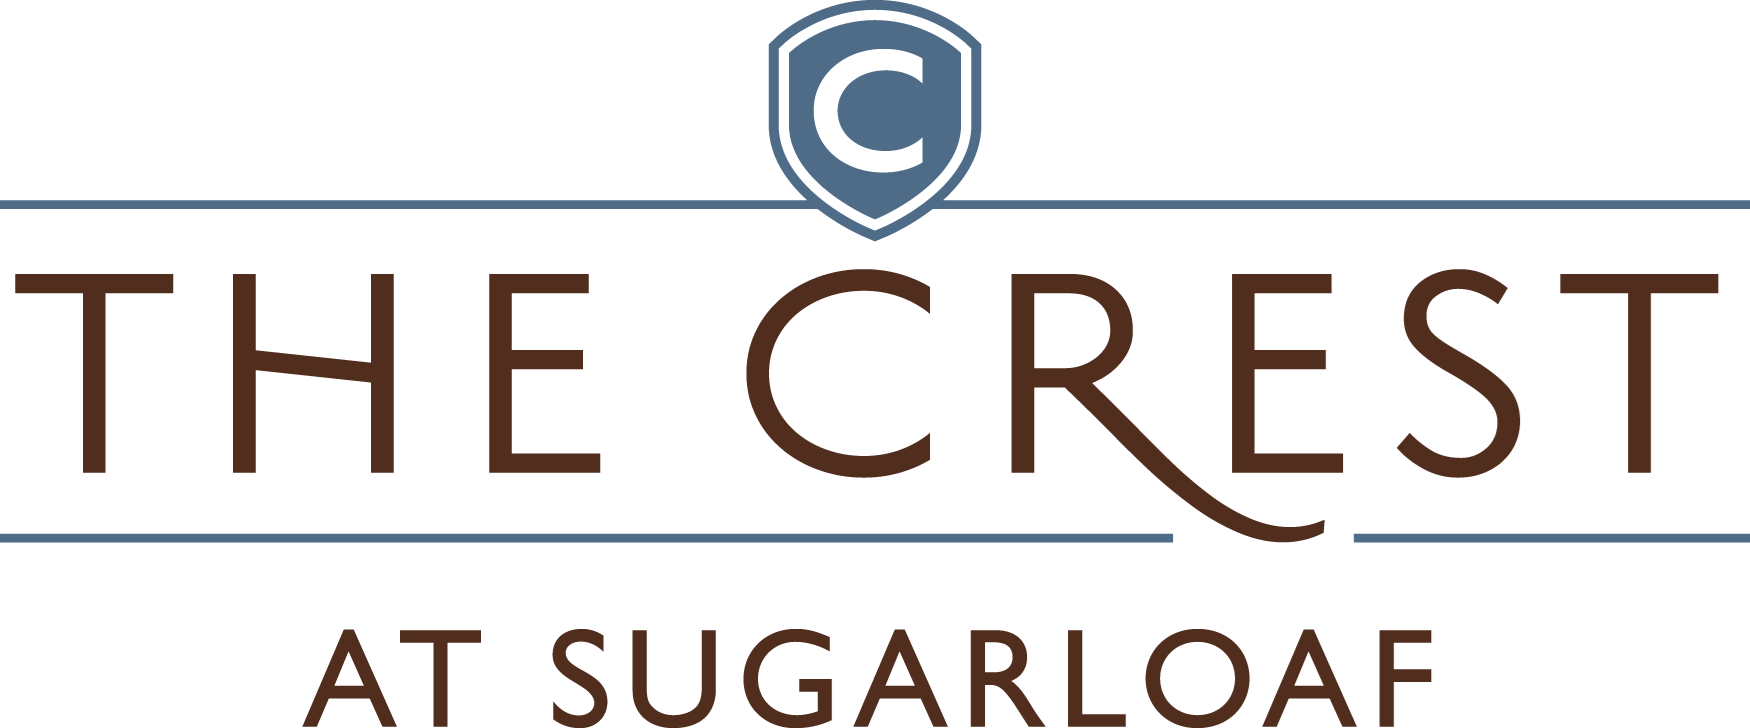 Sugarloaf Logo - The Crest at Sugarloaf | Apartments in Lawrenceville, GA